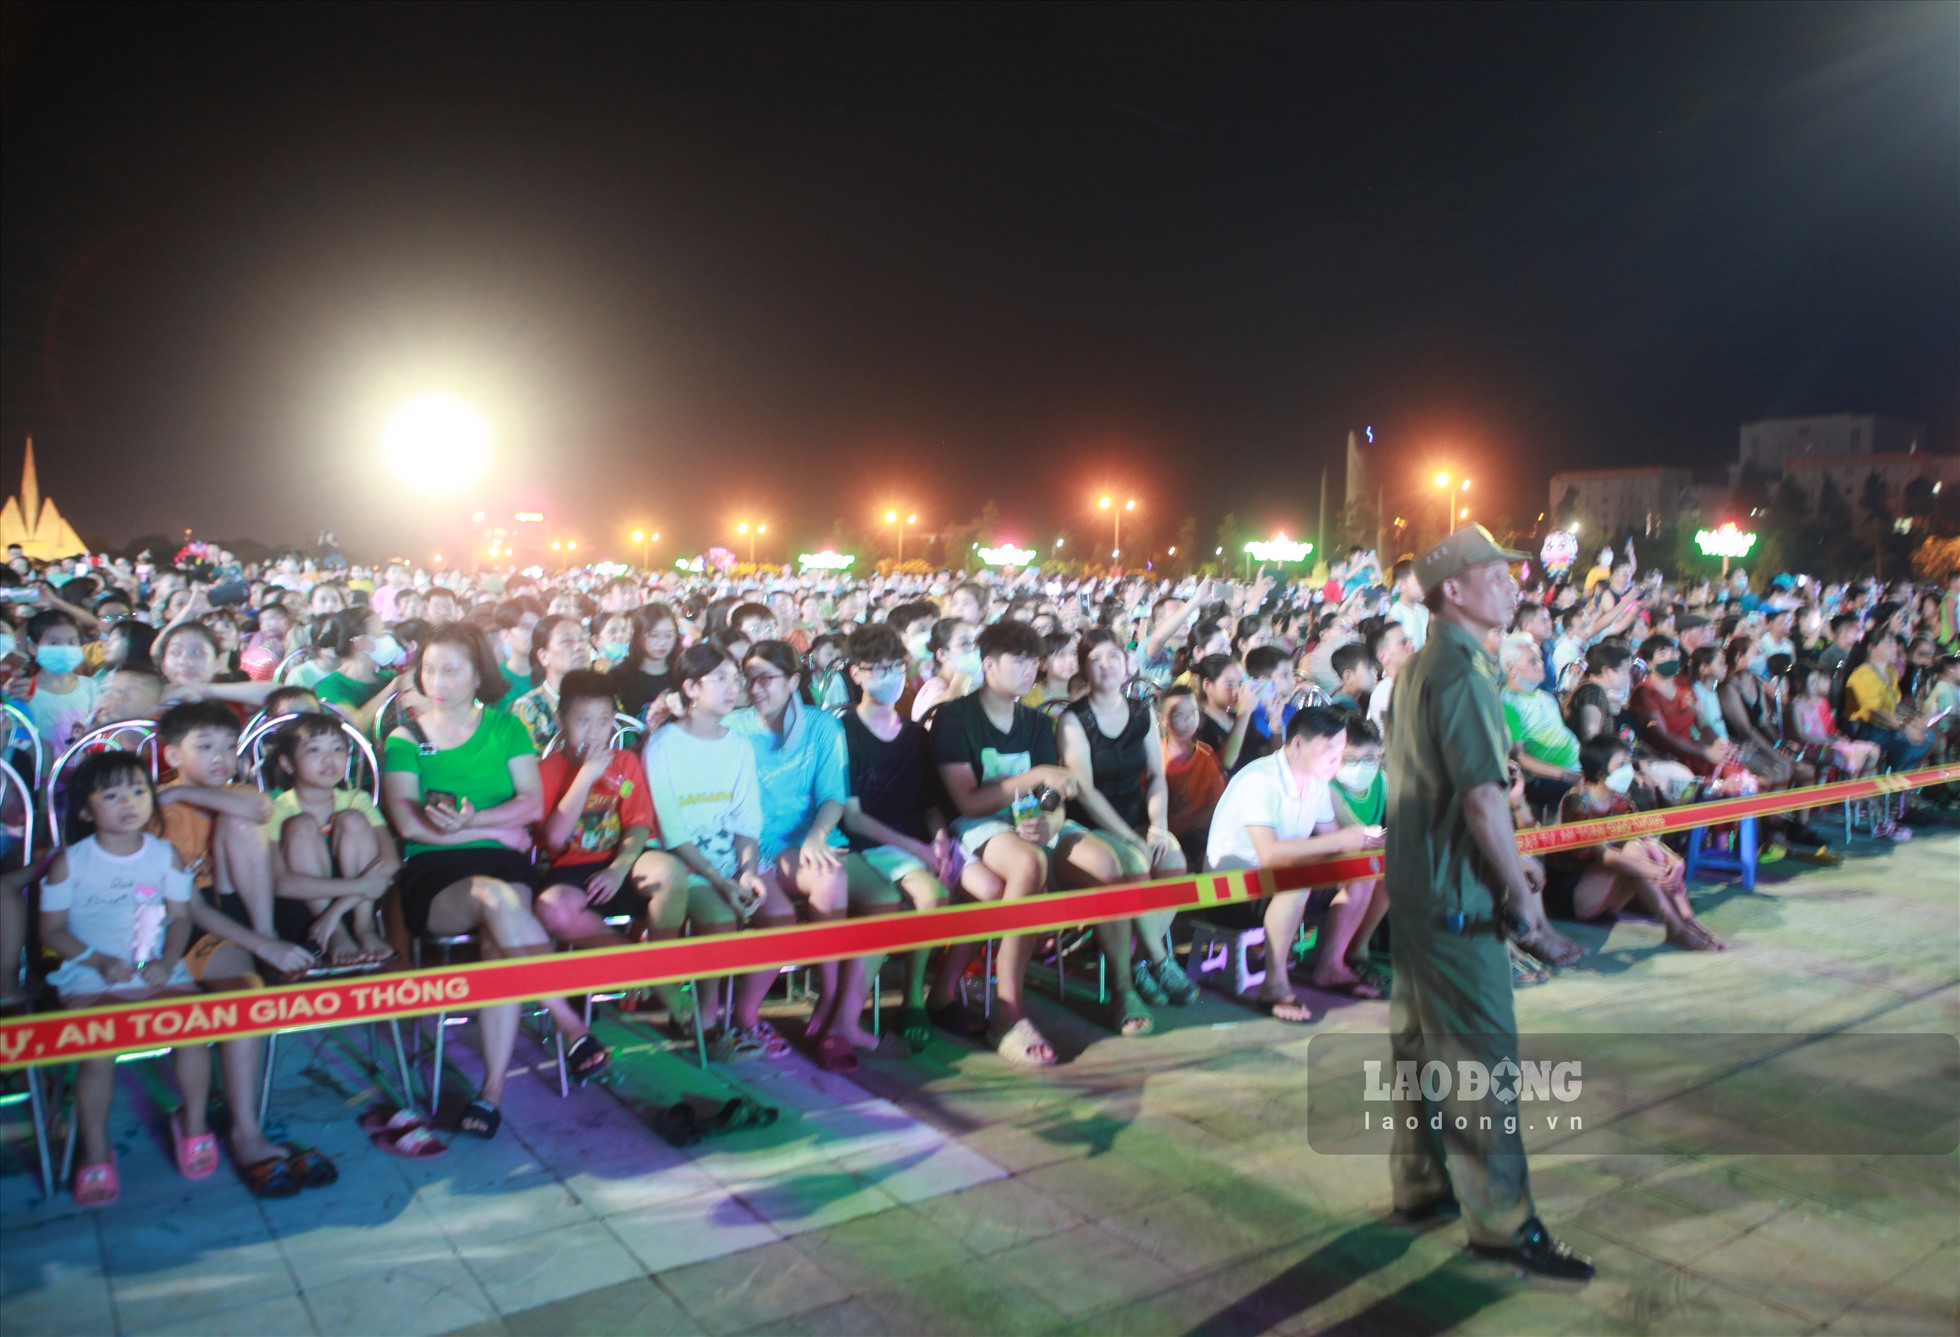 Đến 8h tối 27.8, sự kiện Festival “Tinh hoa Tây Bắc” được tổ chức, cả quảng trường đã đông kín người.